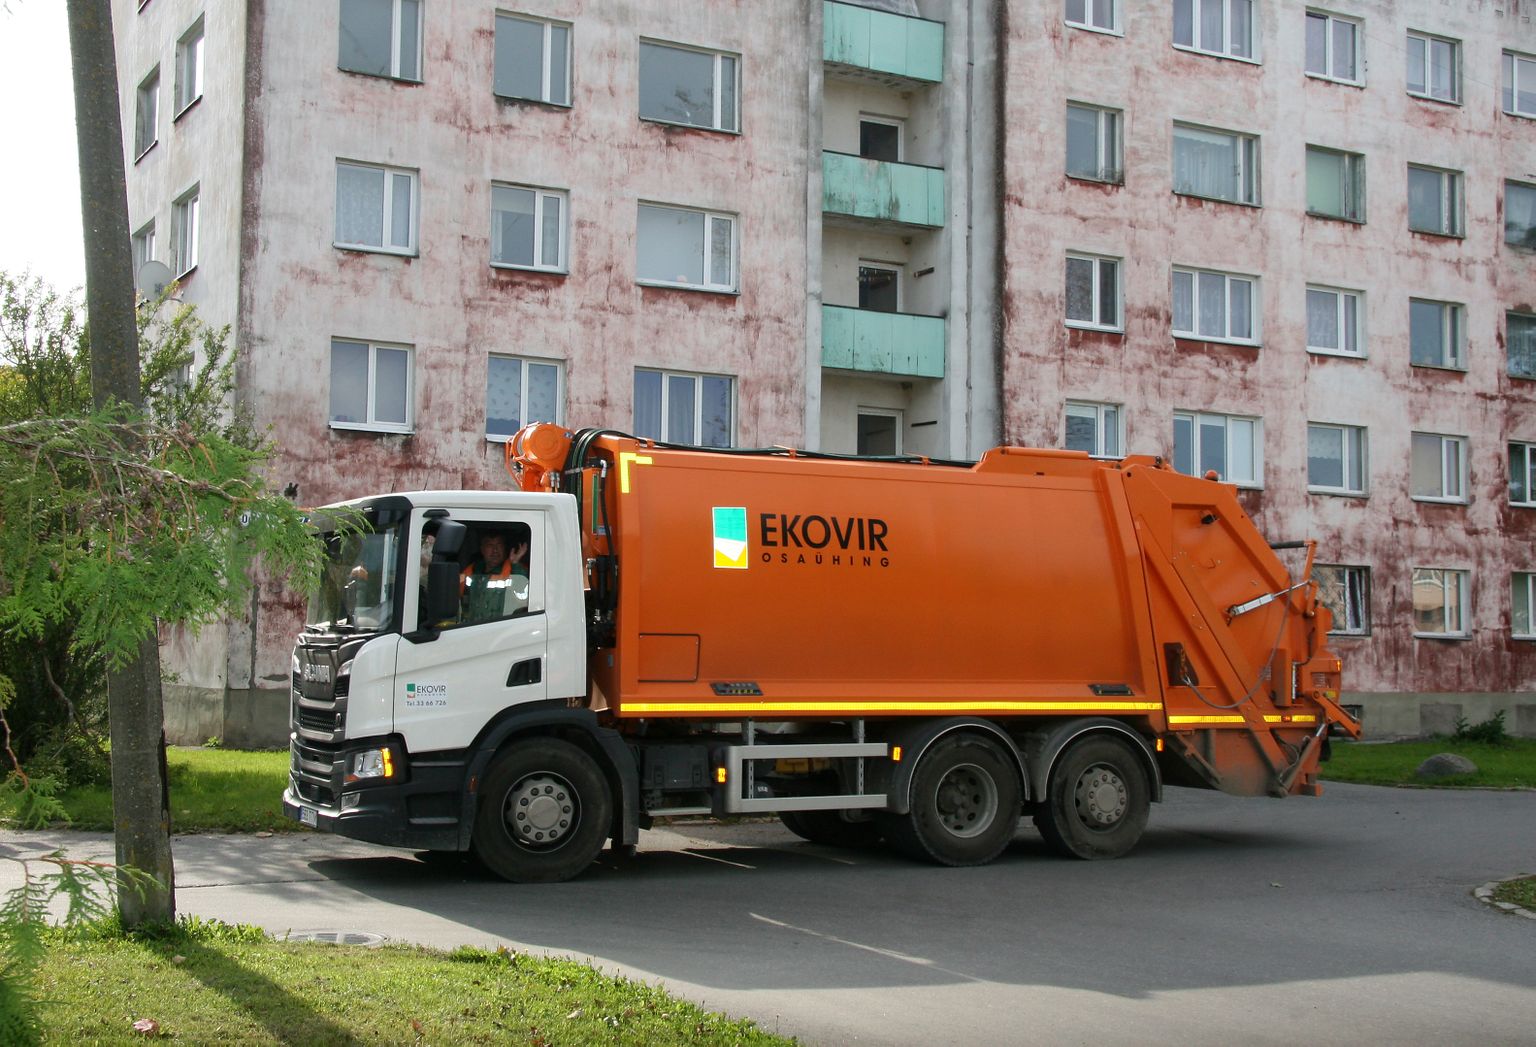 "Ekovir" выиграл тендер на вывоз бытовых отходов в Кохтла-Ярве в 2016 году. С тех пор предприятие дважды ходатайствовало о значительном повышении цены, одно ходатайство было удовлетворено.